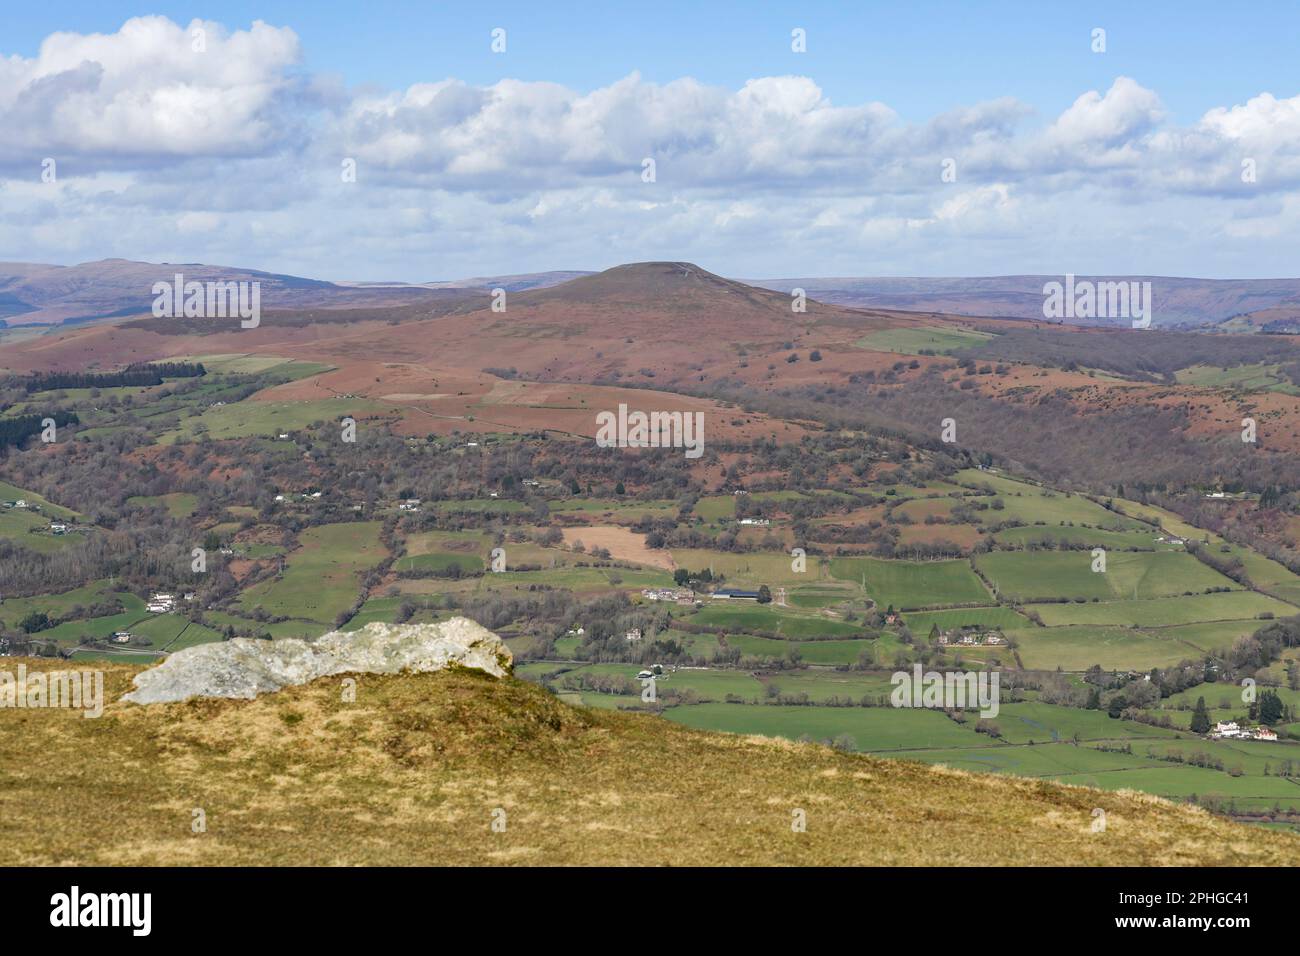 Le Sugarloaf, une montagne située au nord-ouest d'Abergavenny à Monbucshire, pays de Galles, Royaume-Uni Banque D'Images